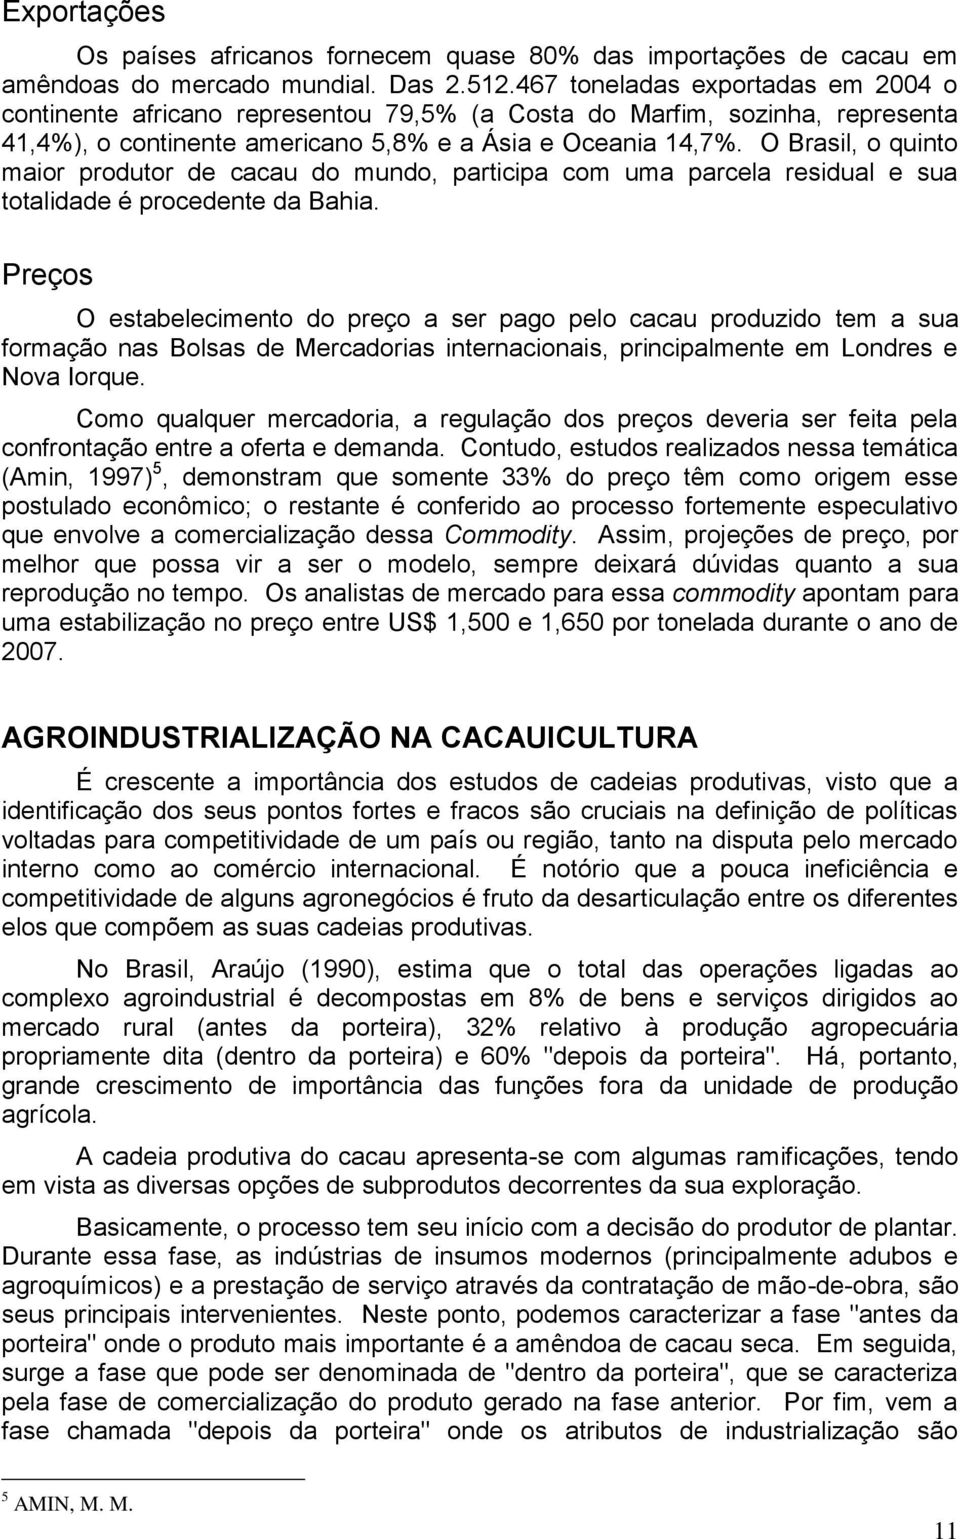 O Brasil, o quinto maior produtor de cacau do mundo, participa com uma parcela residual e sua totalidade é procedente da Bahia.